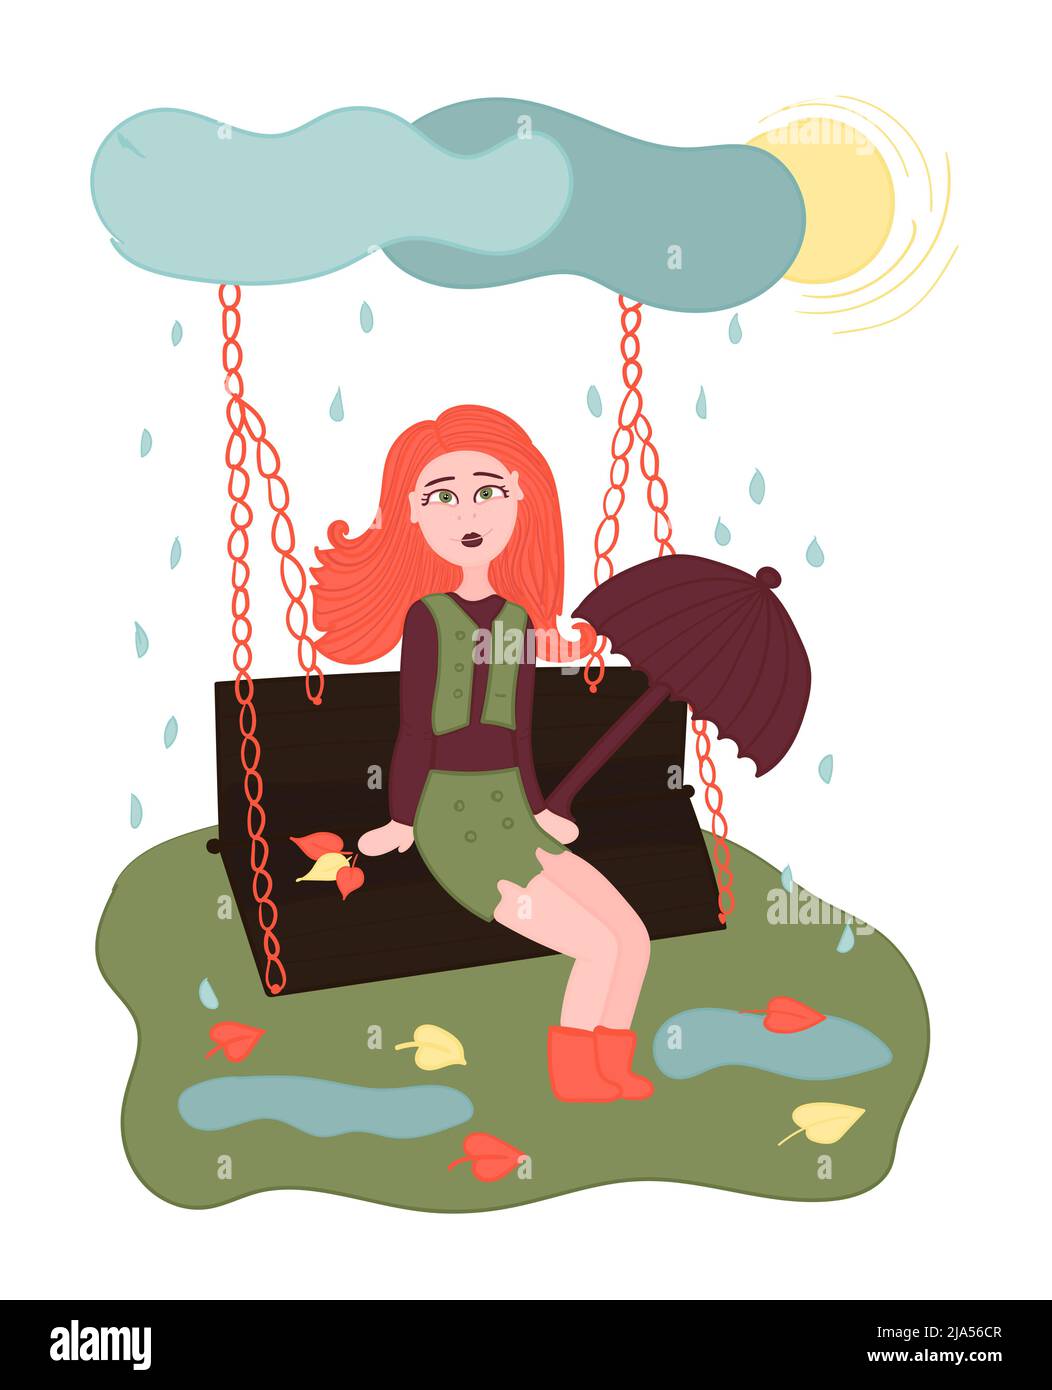 Autumn readhead girl on a swing, illustration Stock Vector